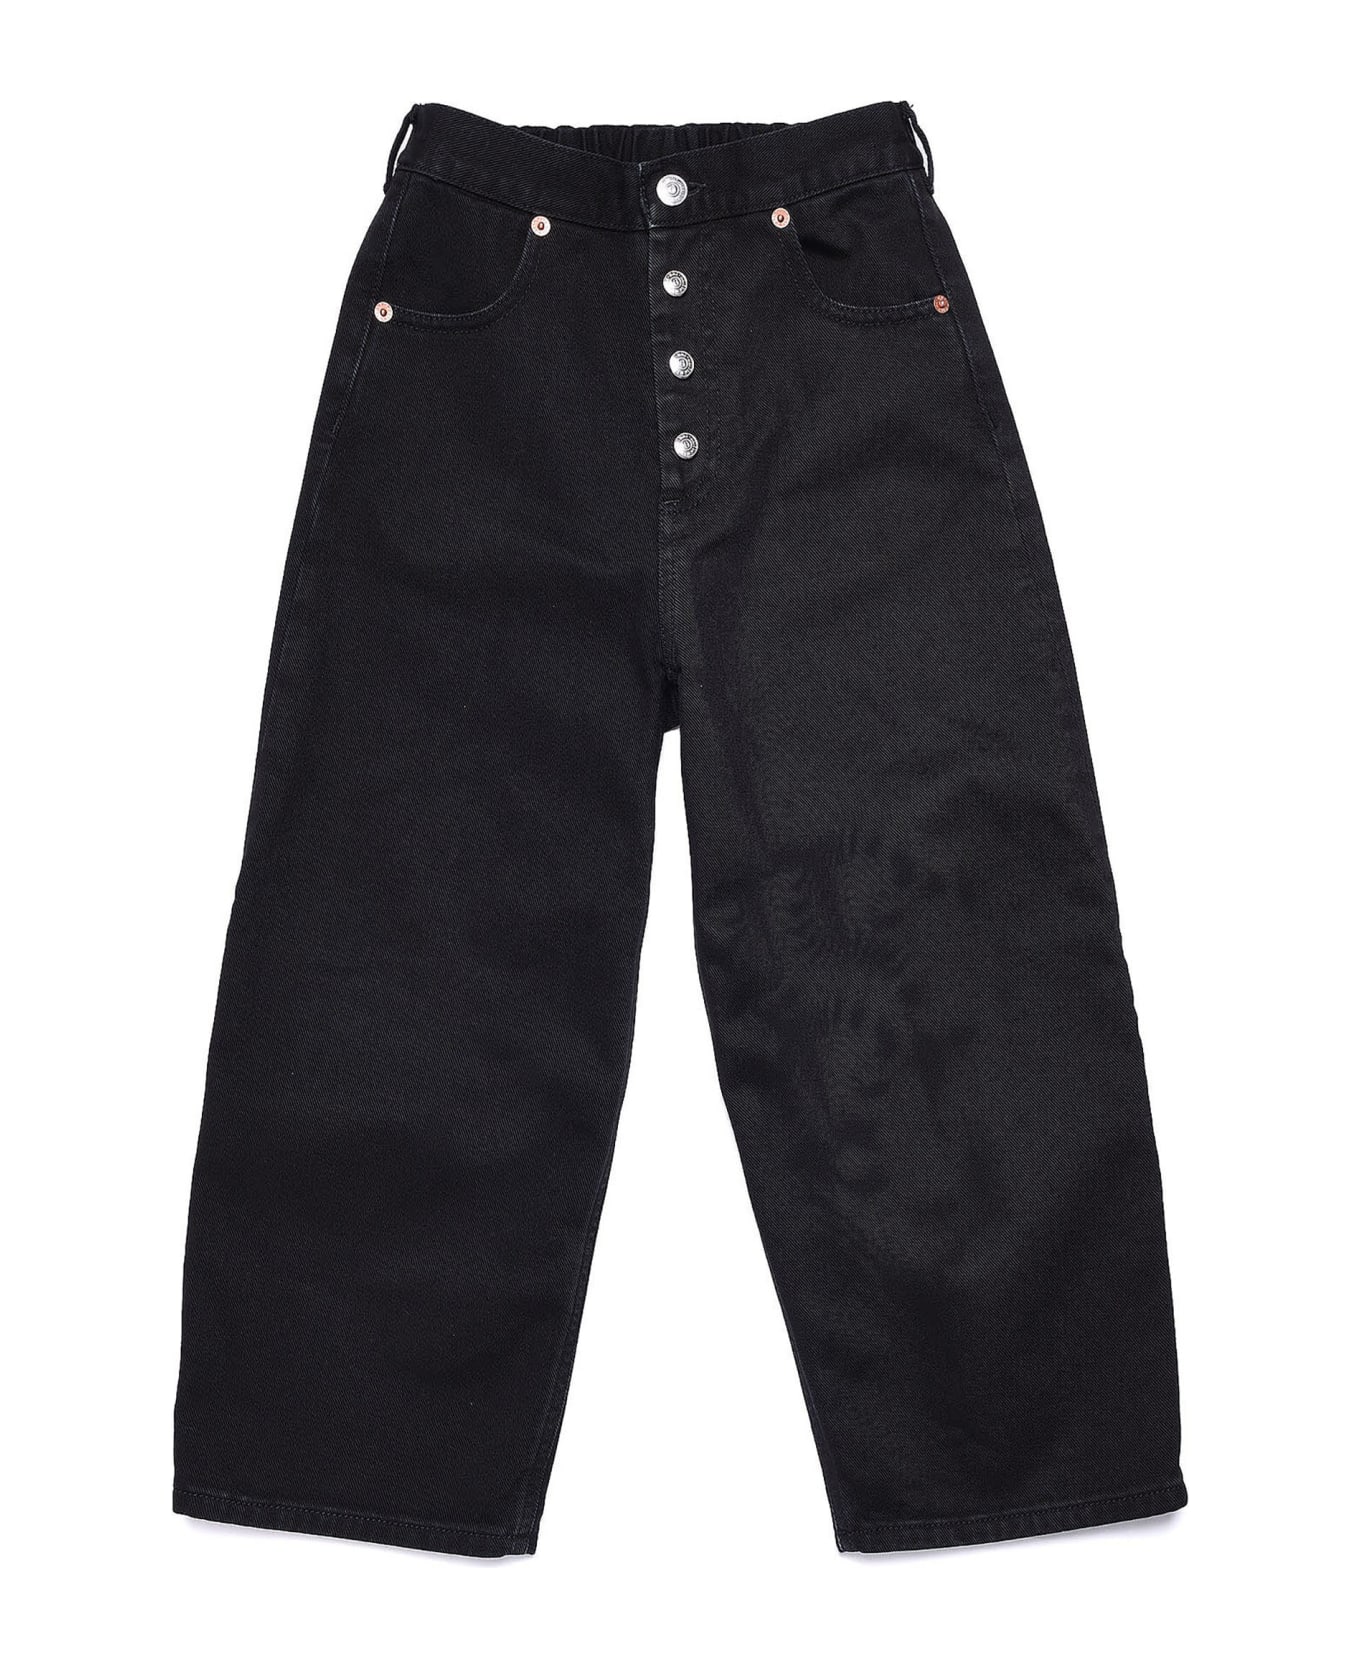 MM6 Maison Margiela Mm6p11u Trousers Maison Margiela Black Vintage-effect Cotton Jeans - Black